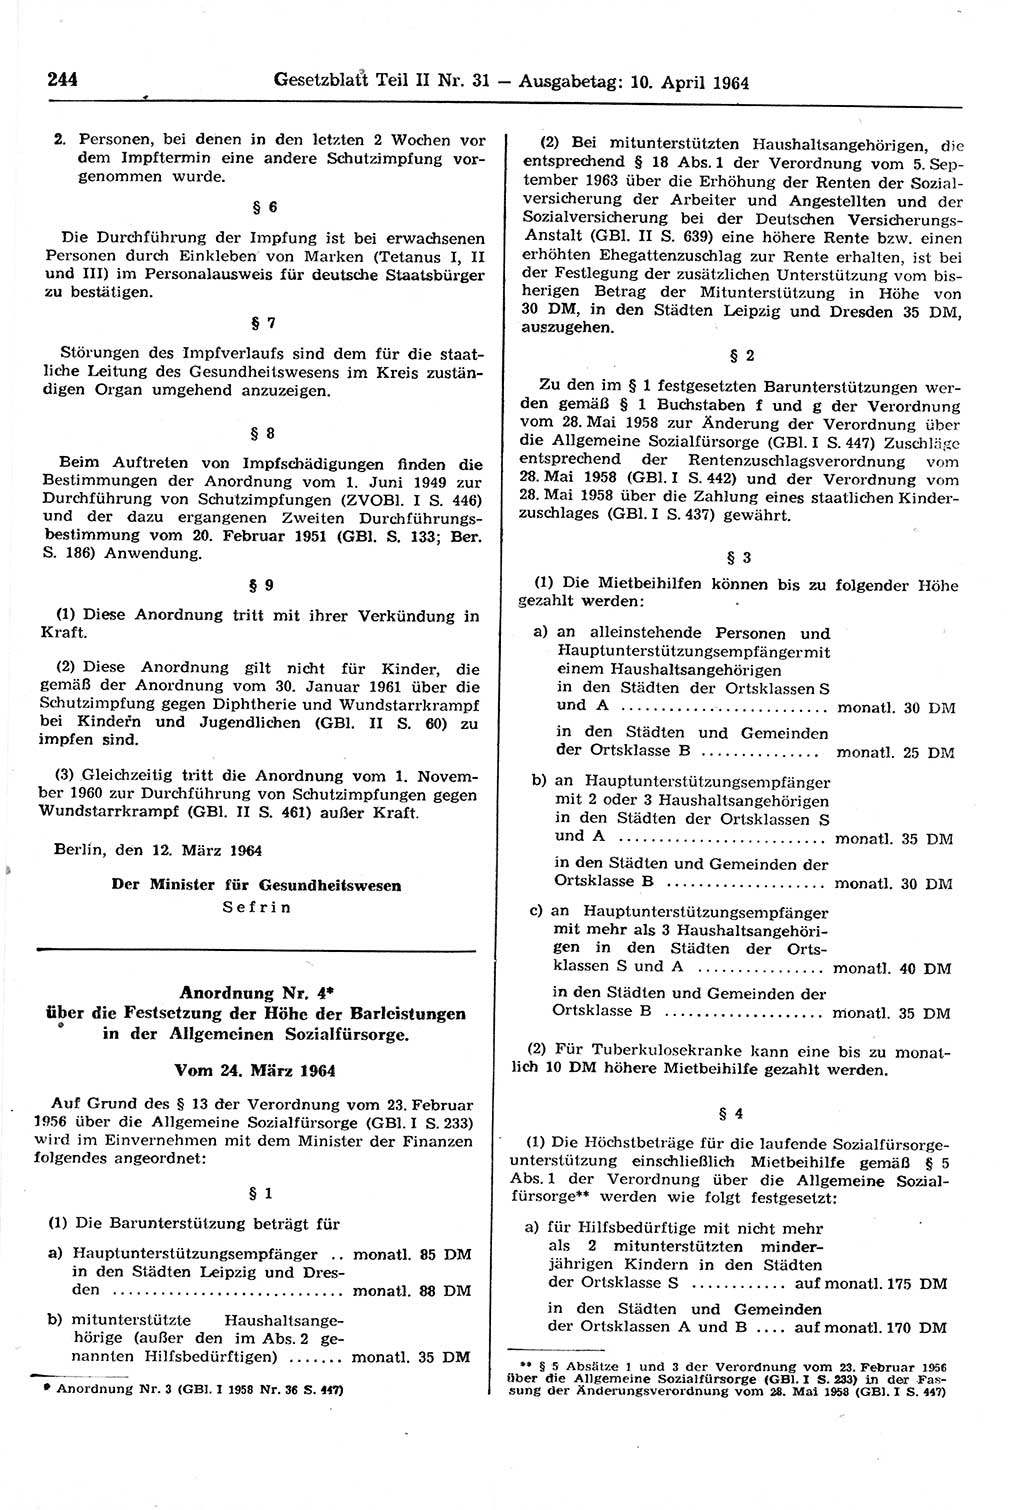 Gesetzblatt (GBl.) der Deutschen Demokratischen Republik (DDR) Teil ⅠⅠ 1964, Seite 244 (GBl. DDR ⅠⅠ 1964, S. 244)